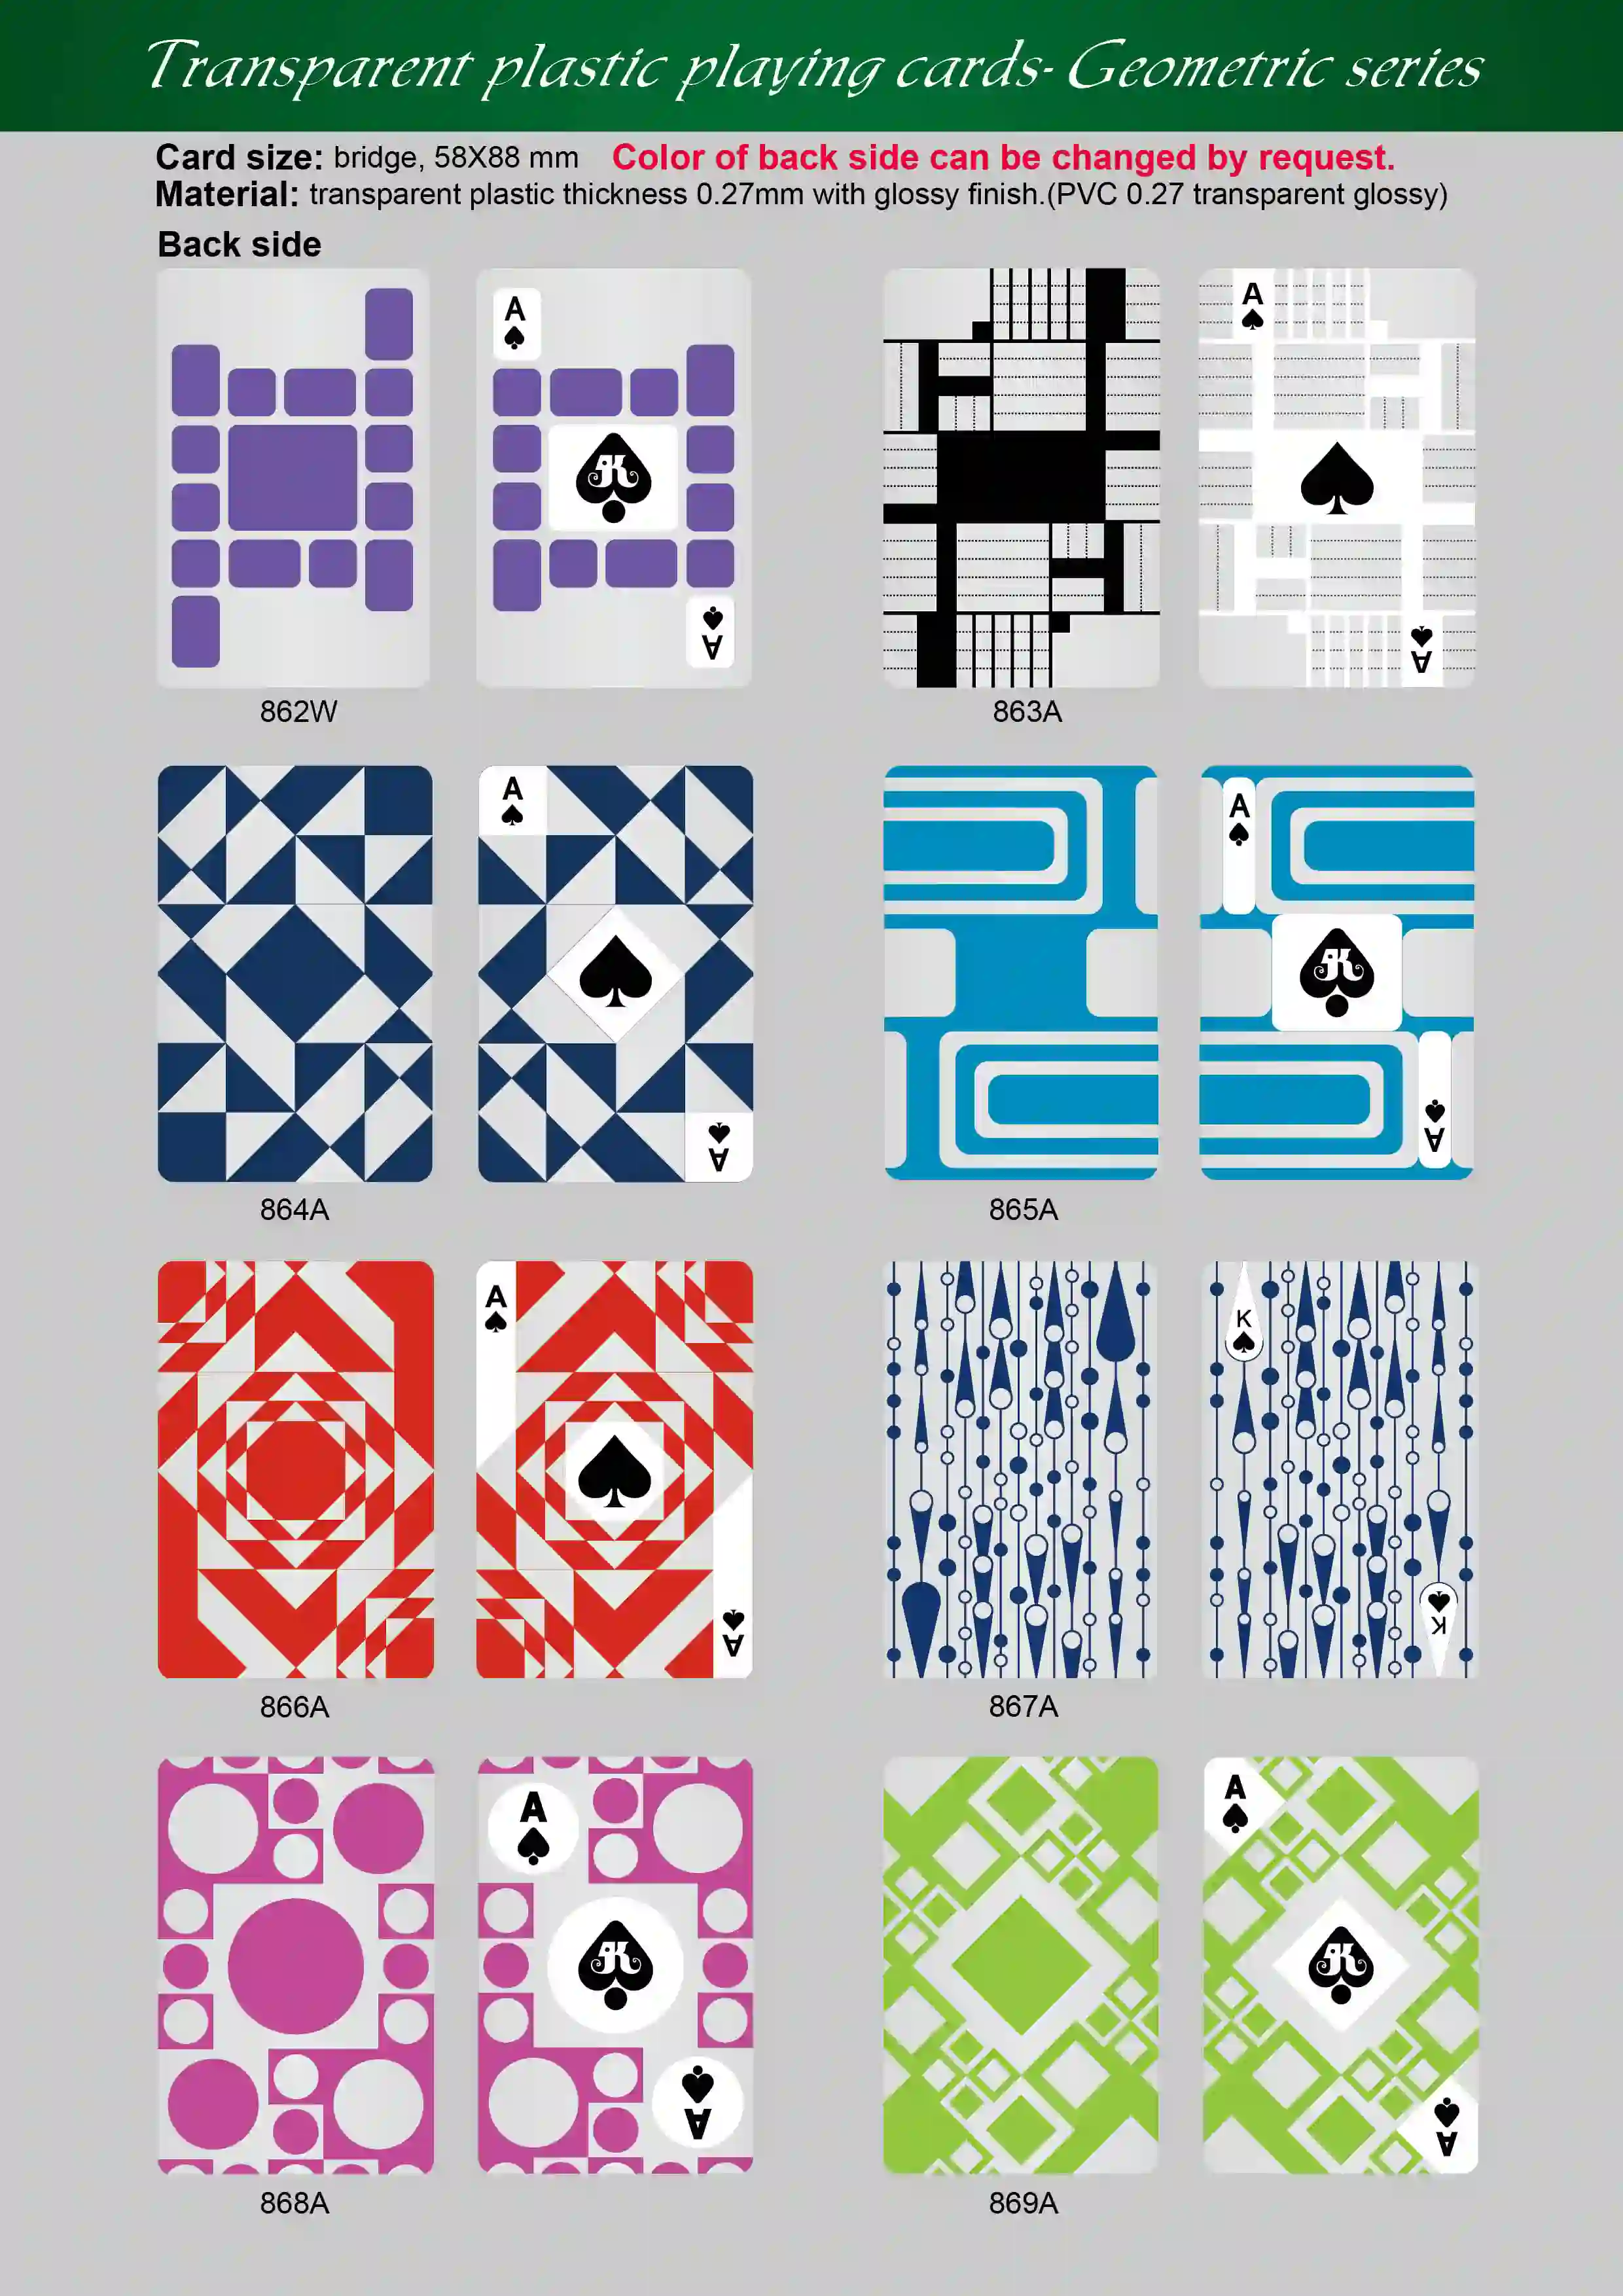 Transparente Spielkarten – Geometrische Serie (Kreis & Linie)